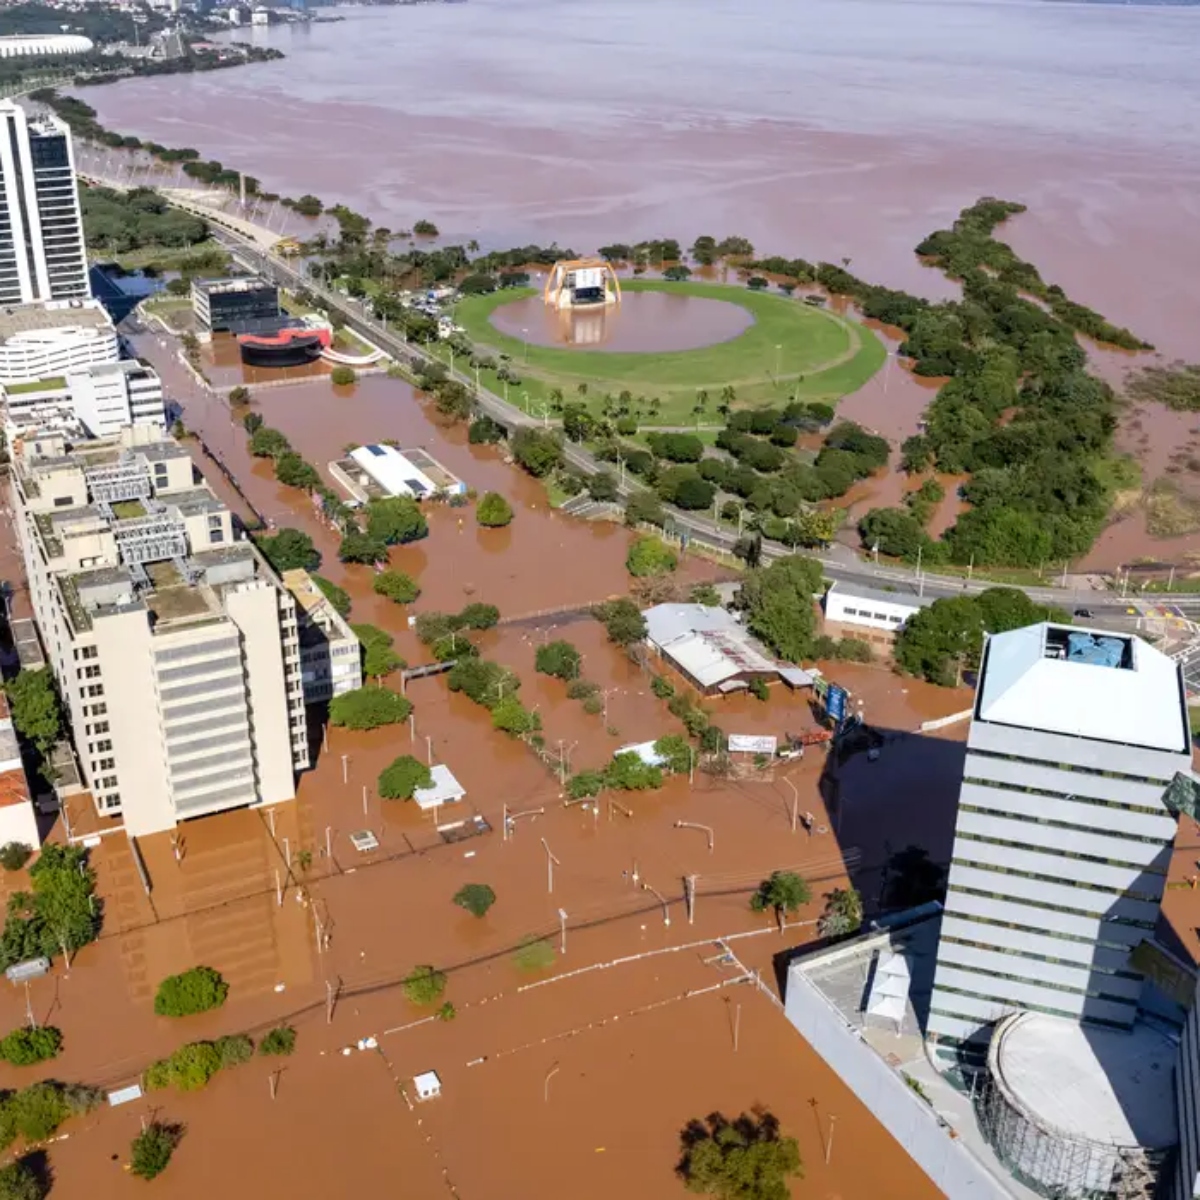 Saiba como ajudar as vítimas das chuvas no Rio Grande do Sul